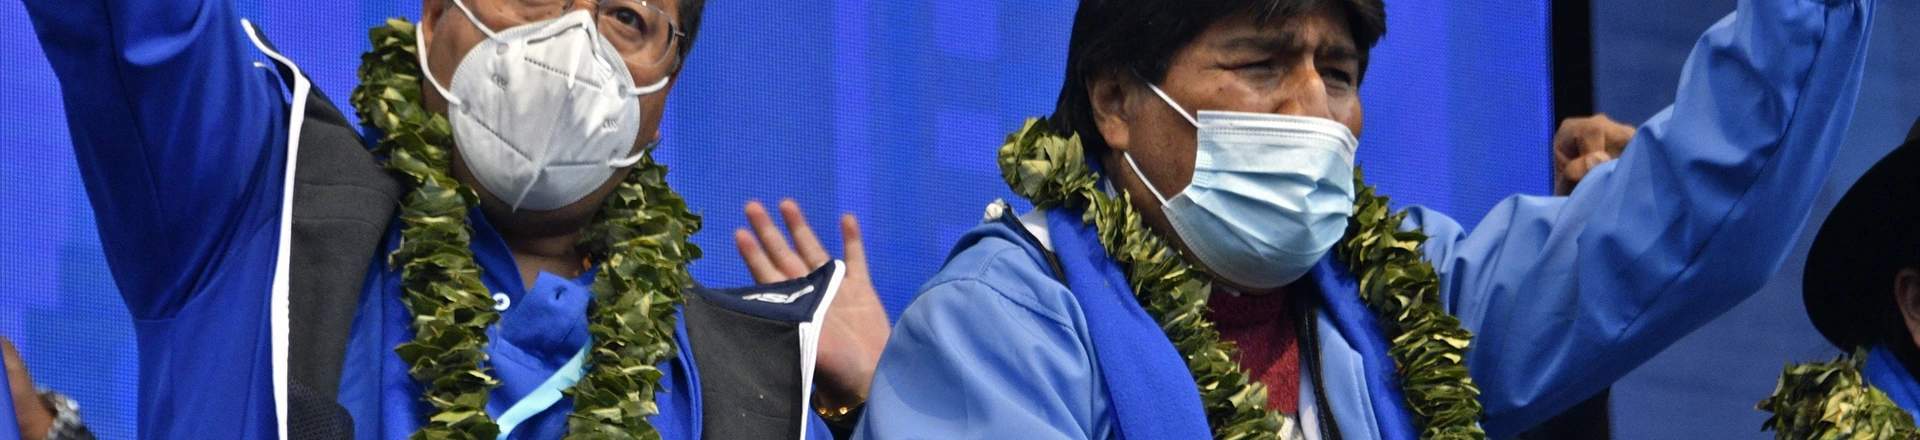 O presidente boliviano, Luis Arce, à esquerda, e o ex-presidente Evo Morales levantam os punhos durante as comemorações do 26º aniversário do partido governista Movimiento al Socialismo, em La Paz, Bolívia, em 29 de março de 2021.